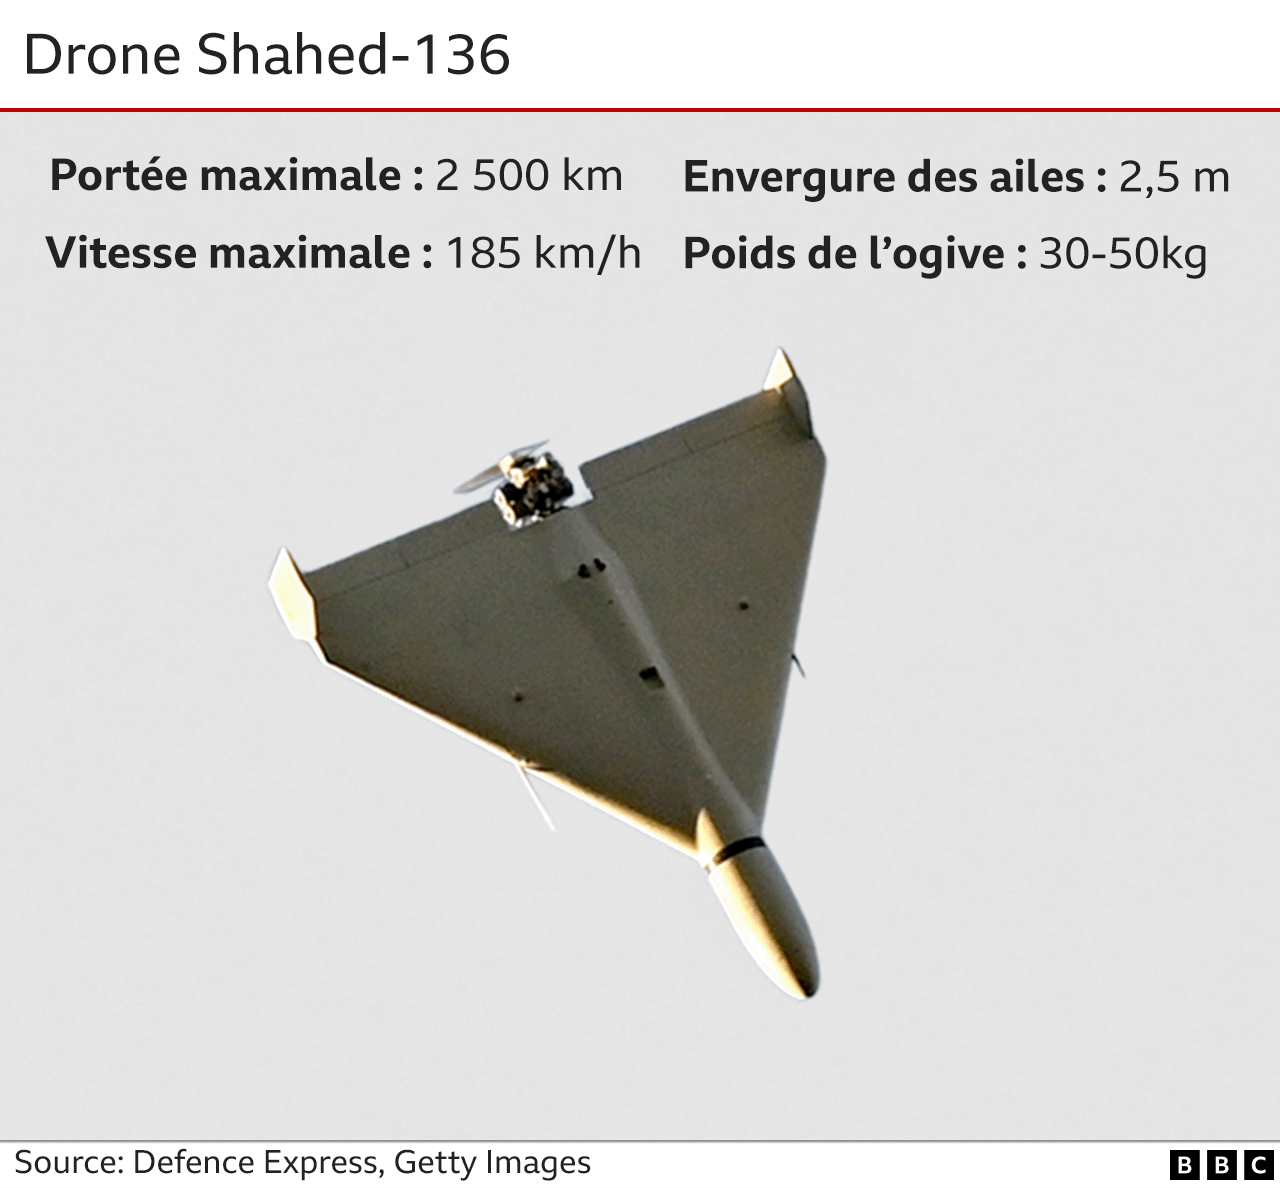 Guerre Ukraine - Russie : comment les drones kamikazes sont-ils utilisés par les deux pays ? - BBC News Afrique